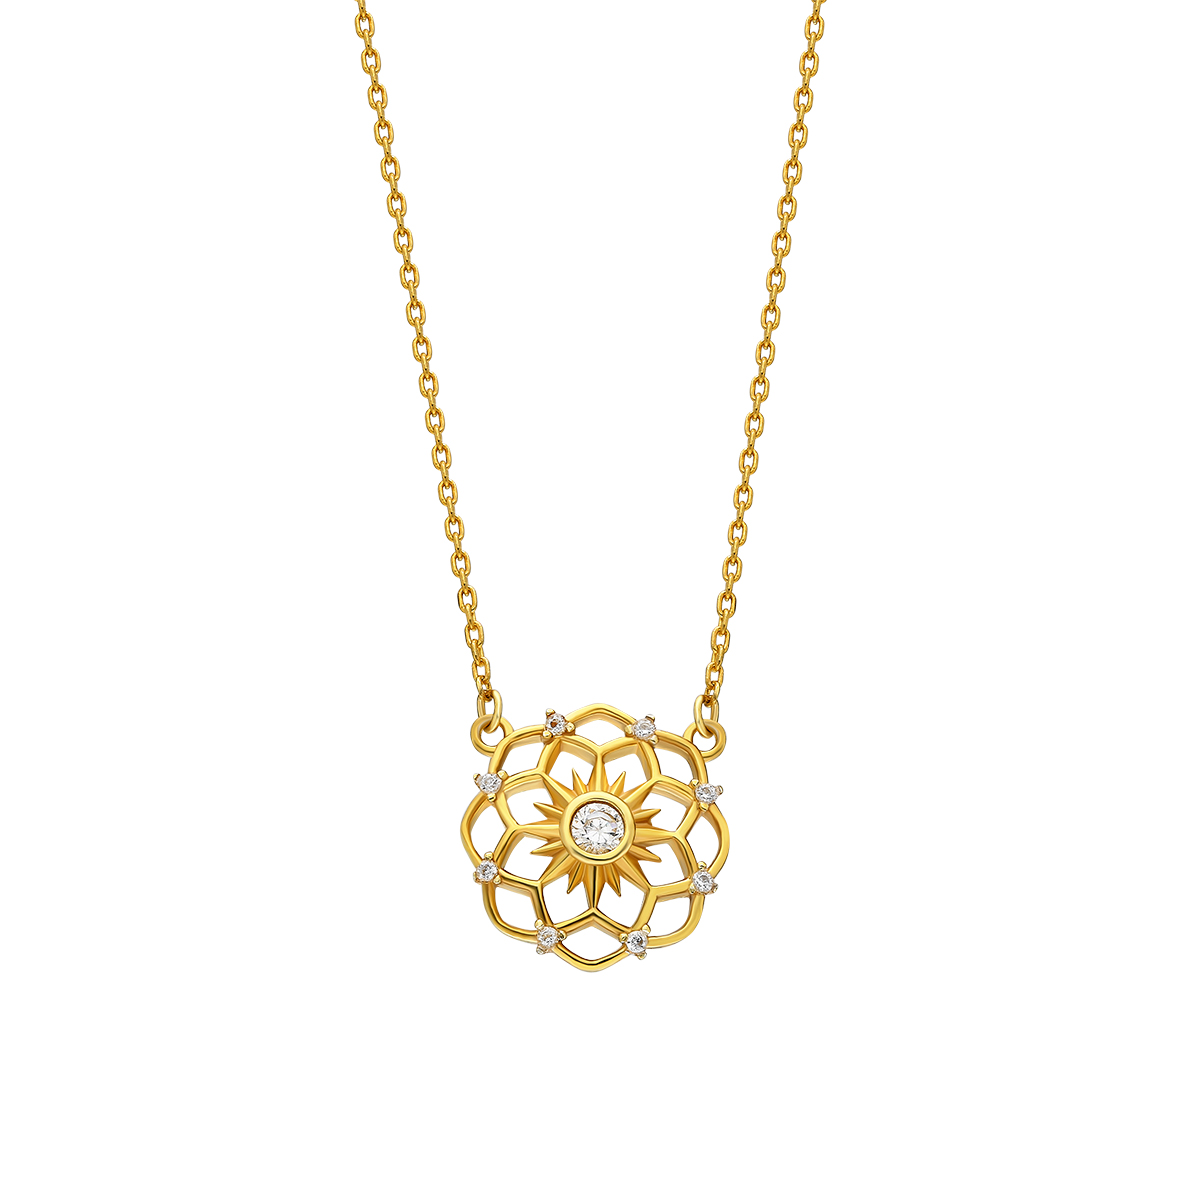 Silver Necklace Flower Design Special Design 925 Sterling